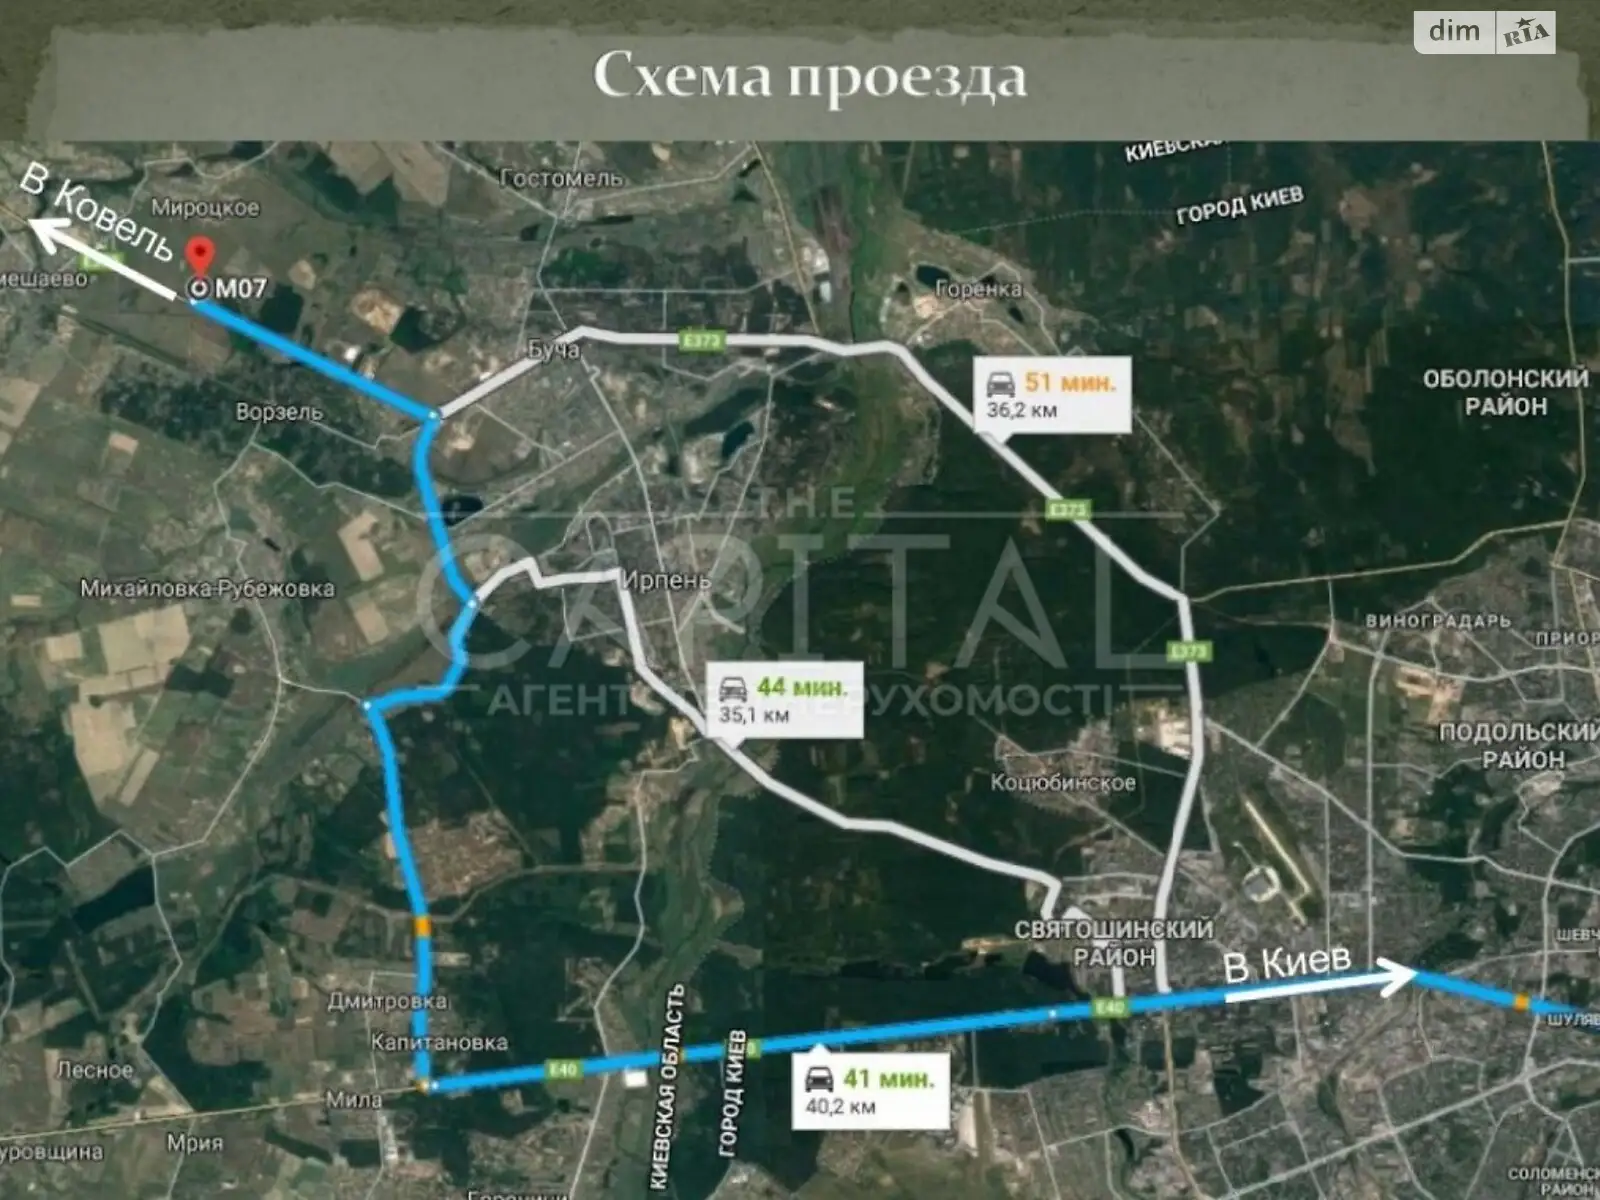 Продается земельный участок 1200310 соток в Киевской области, цена: 1200310 $ - фото 1